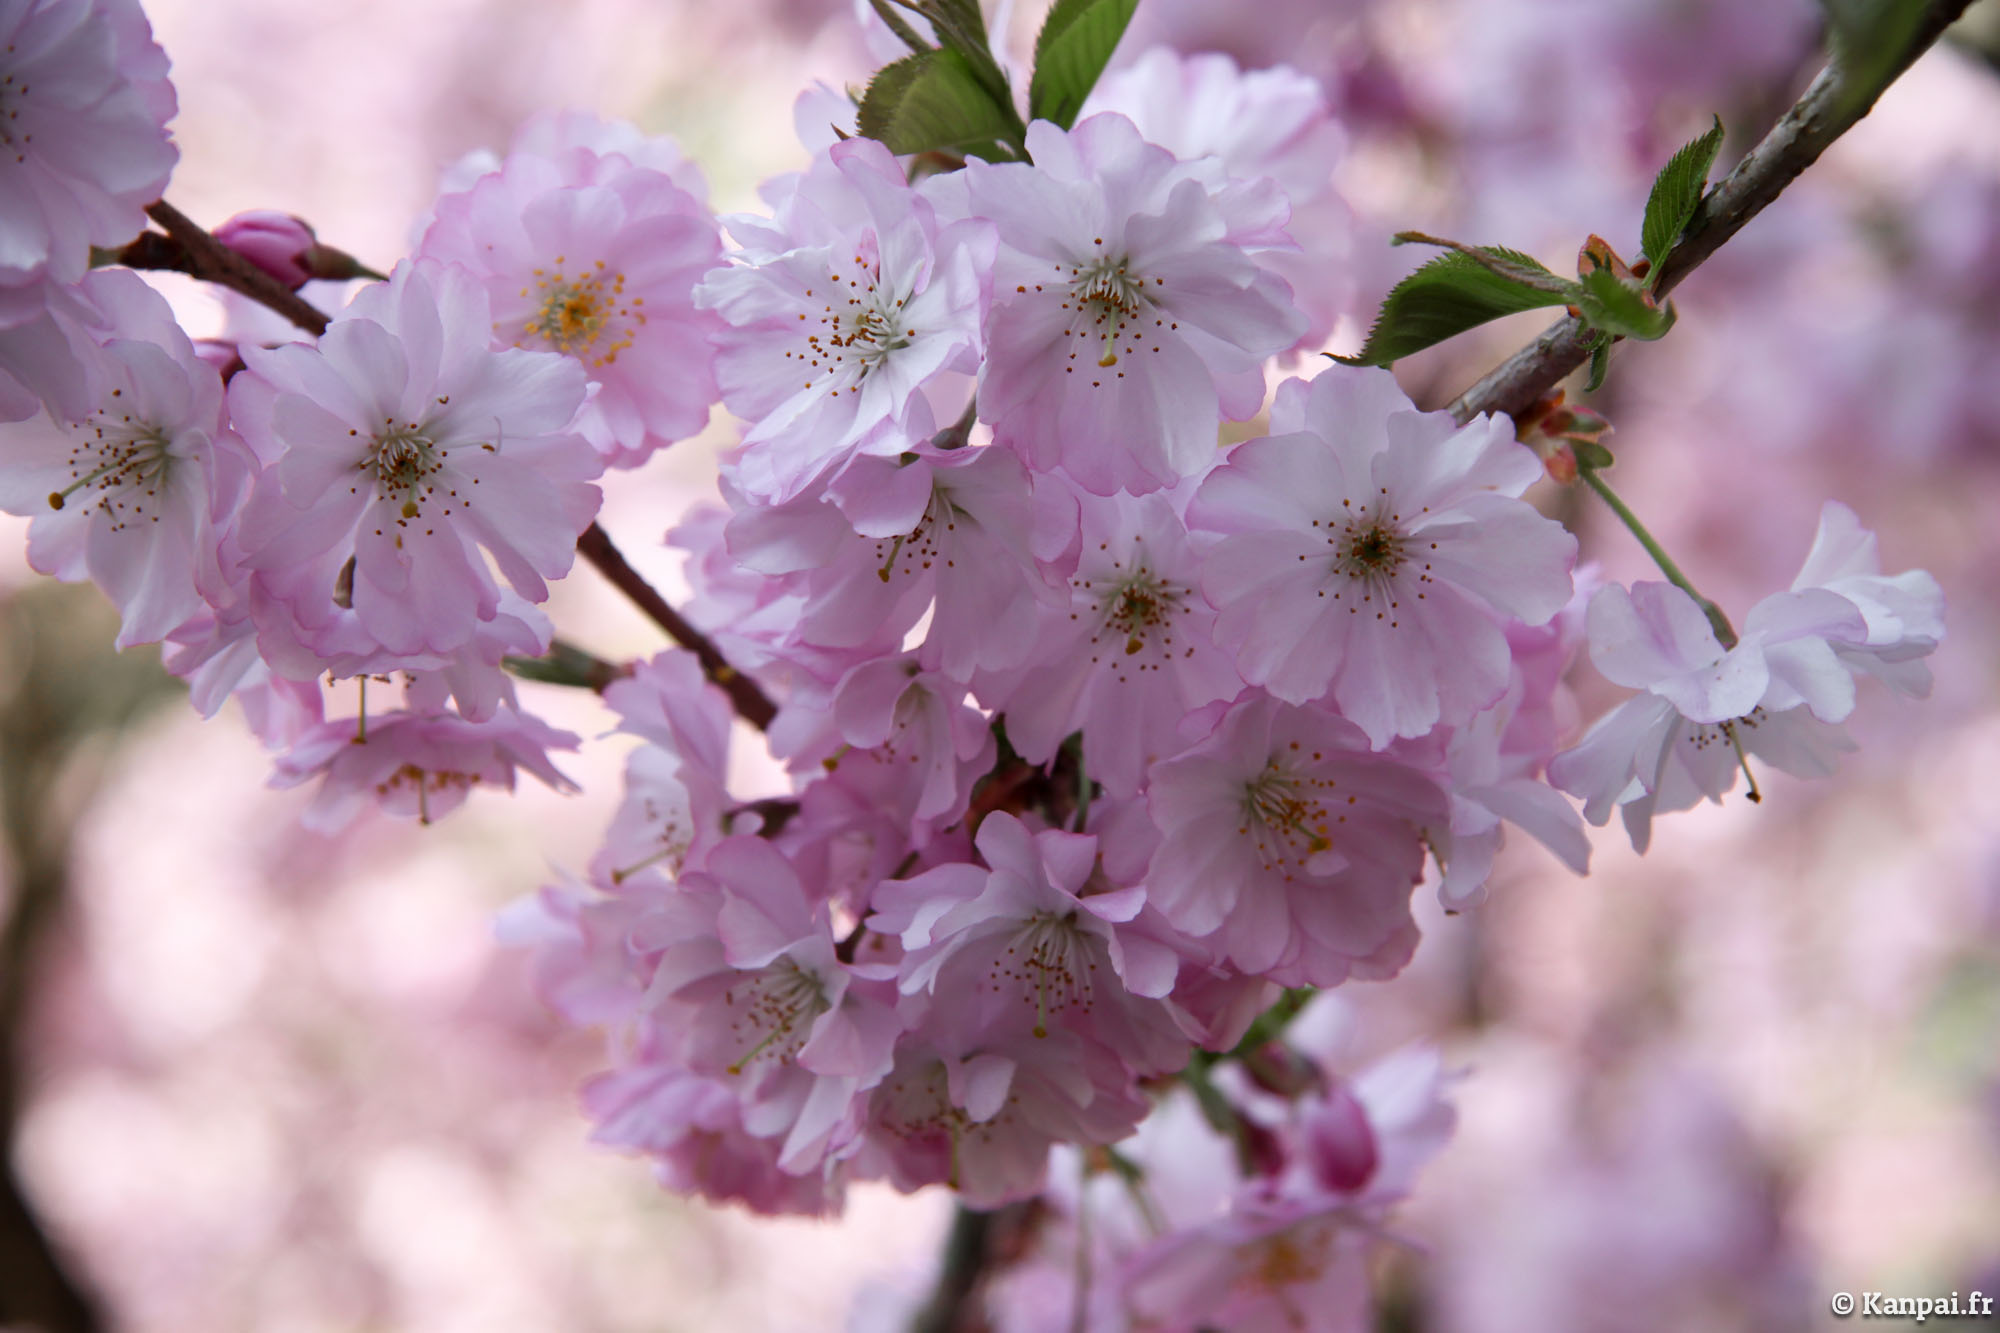  Sakura  les cerisiers en fleurs  du Japon  o Hanami 